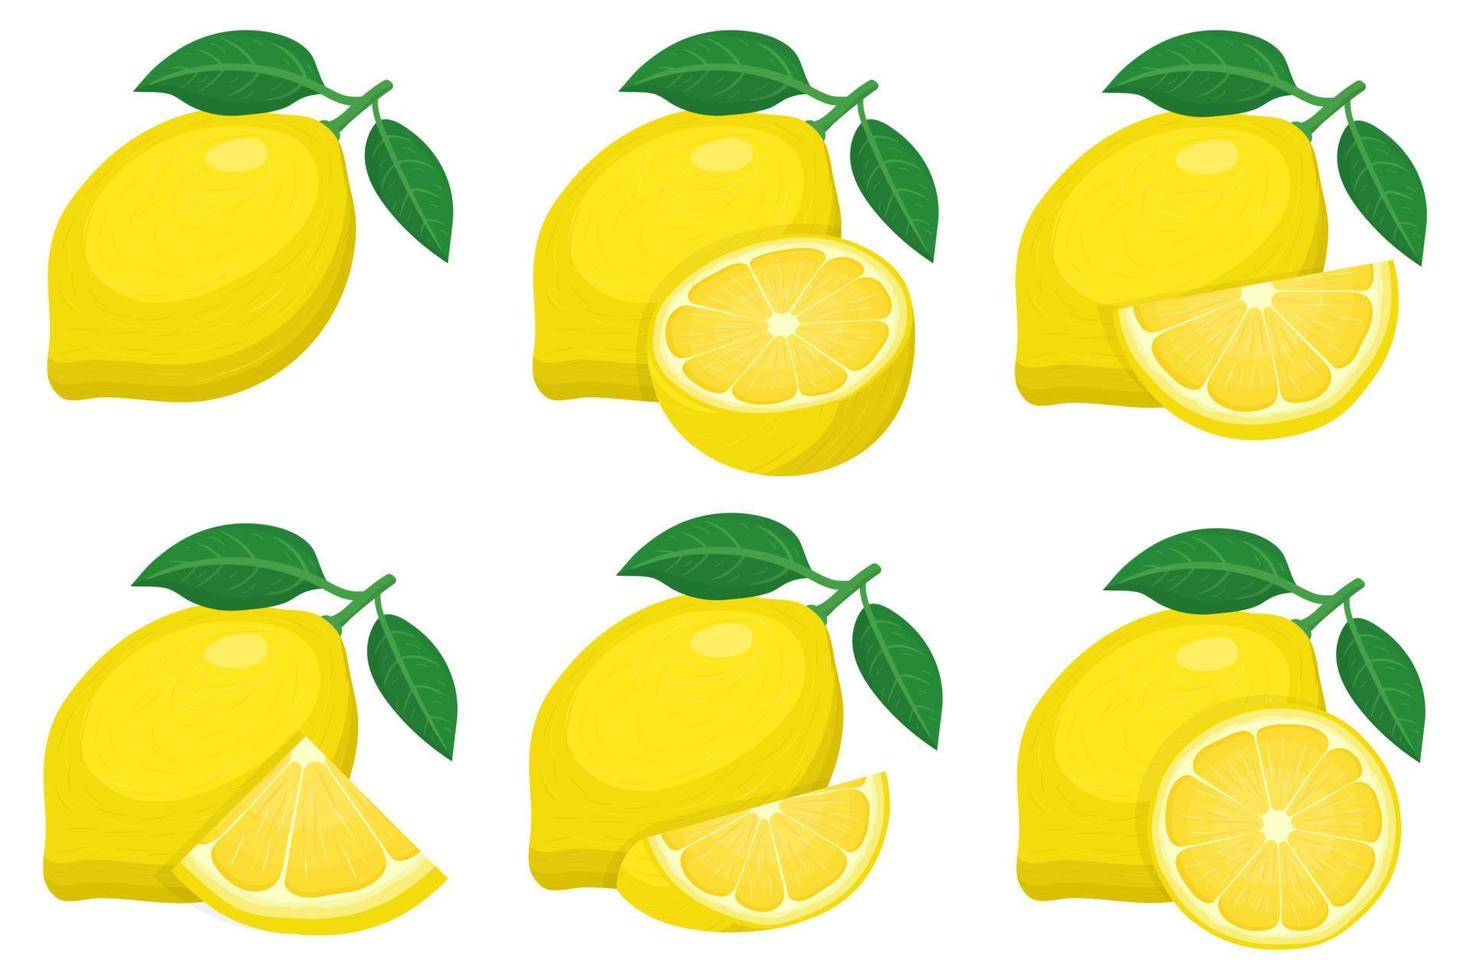 uppsättning färska hela, halva, skära skiva citron frukt grupper isolerad på vit bakgrund. sommarfrukter för en hälsosam livsstil. ekologisk frukt. tecknad stil. vektor illustration för någon design.